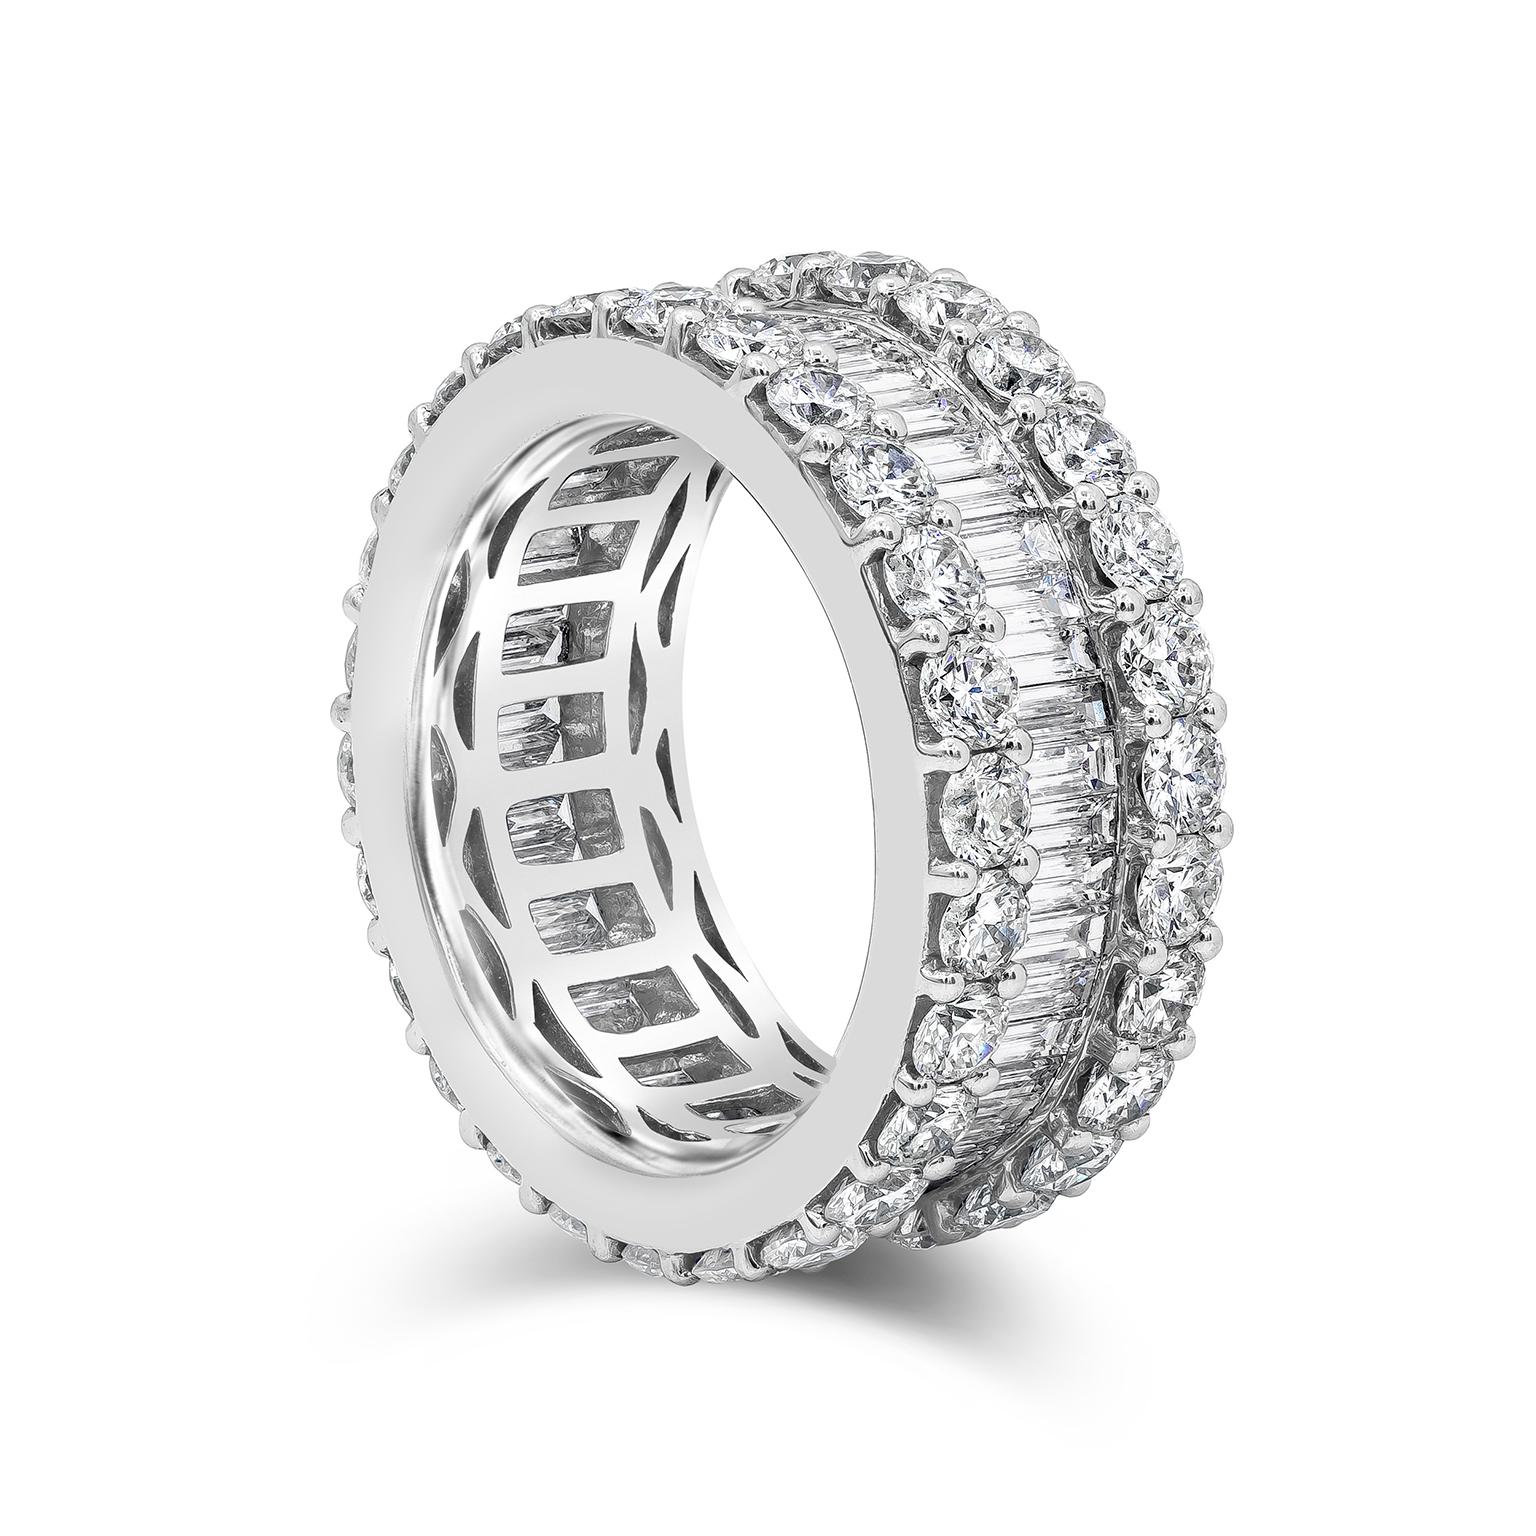 Ein attraktiver Ehering für die Ewigkeit mit insgesamt 5,82 Karat Diamanten. In der Mitte befinden sich wunderschön aufeinander abgestimmte Baguette-Diamanten mit einem Gesamtgewicht von 1,96 Karat, flankiert auf jeder Seite von einer Reihe runder